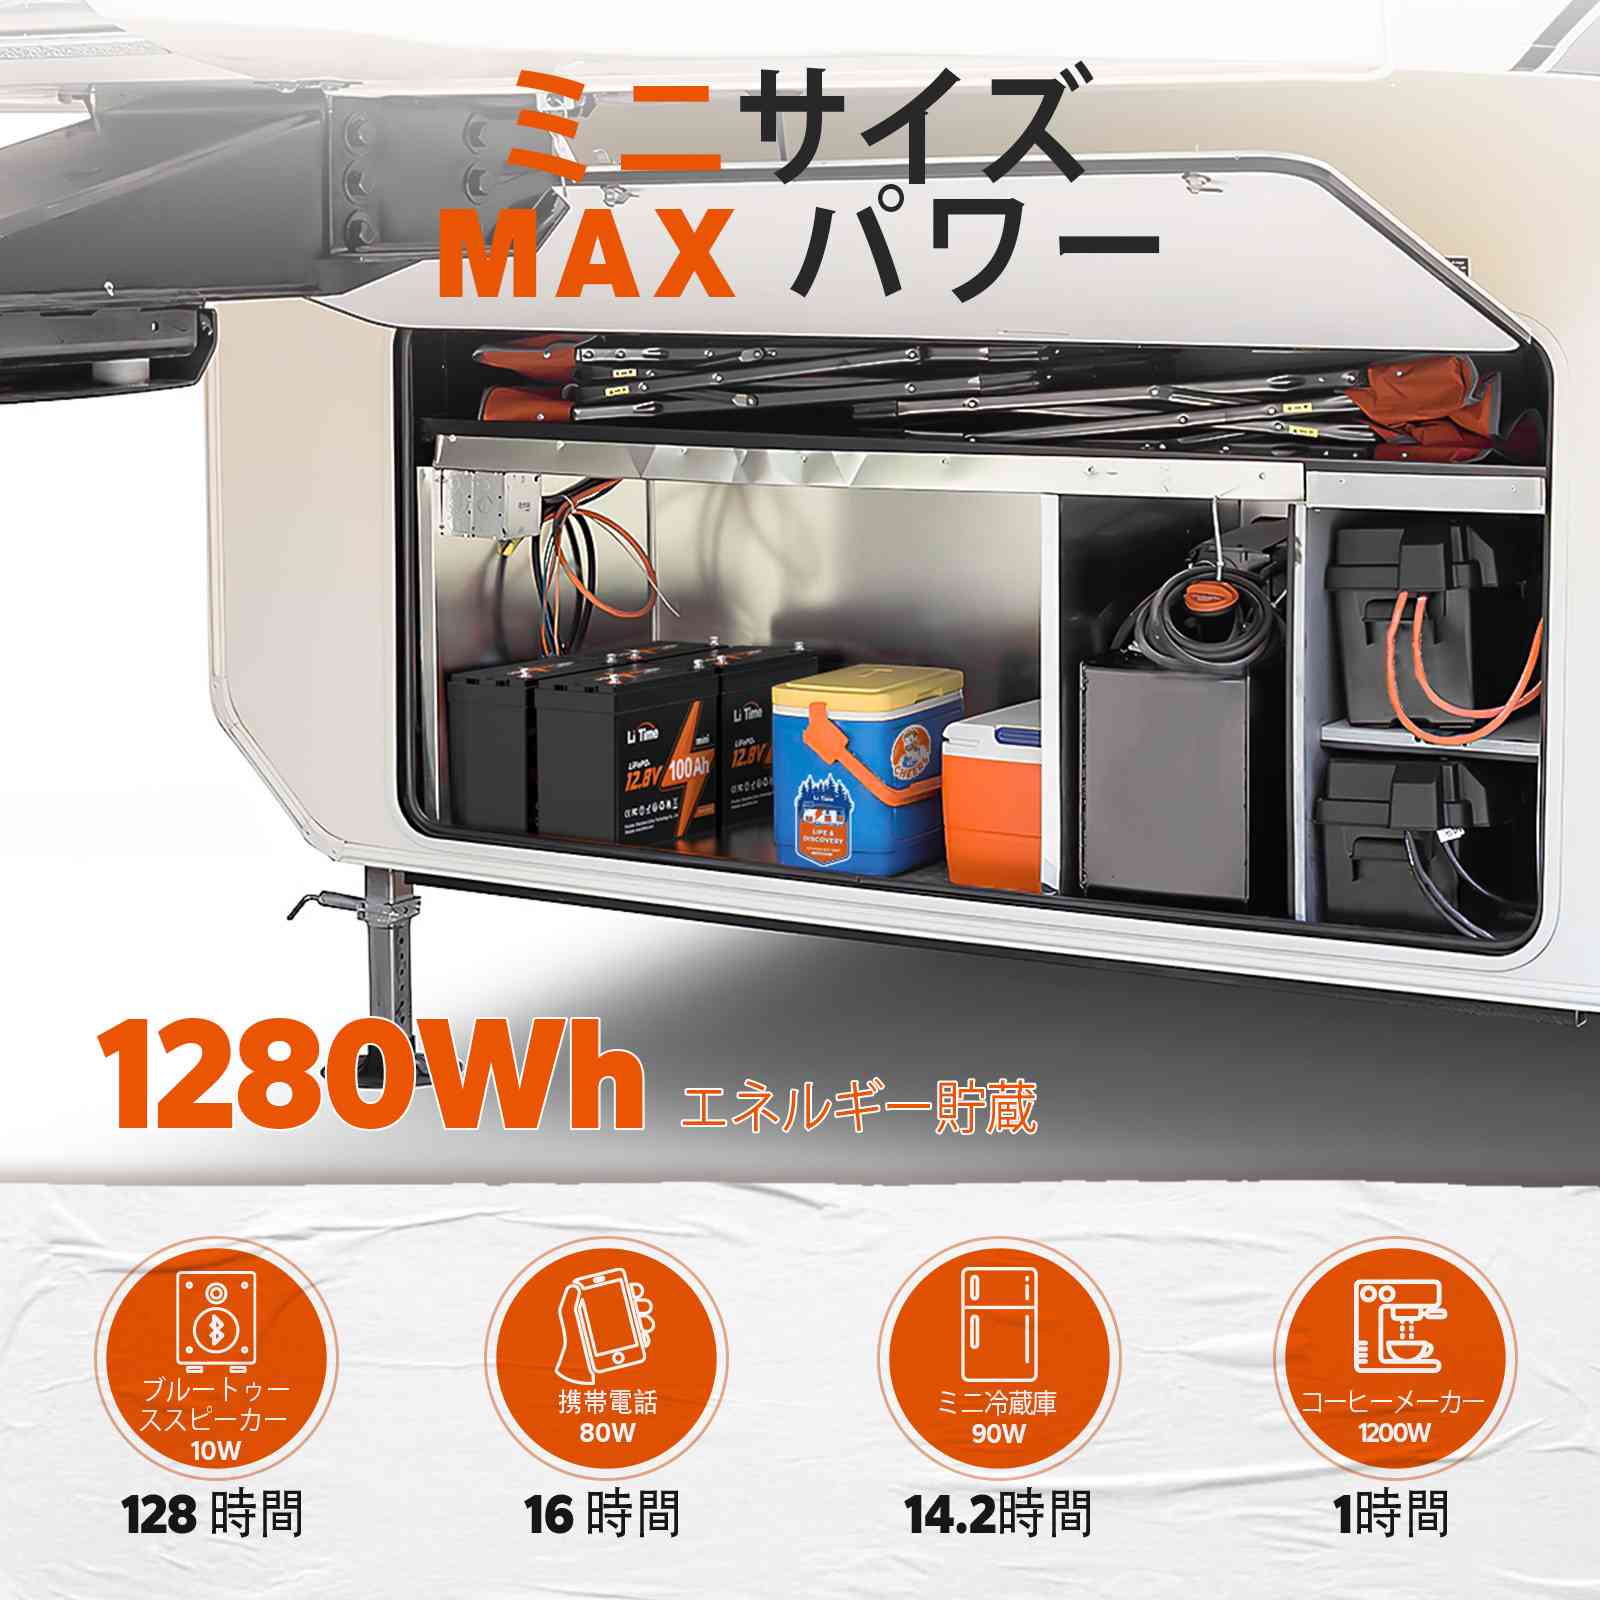 【スペシャル】LiTime  新製品 100Ahmini 1280Wh 小型・軽量・超高エネルギー密度 早期特典 わずか47,999円 LiTime-JP